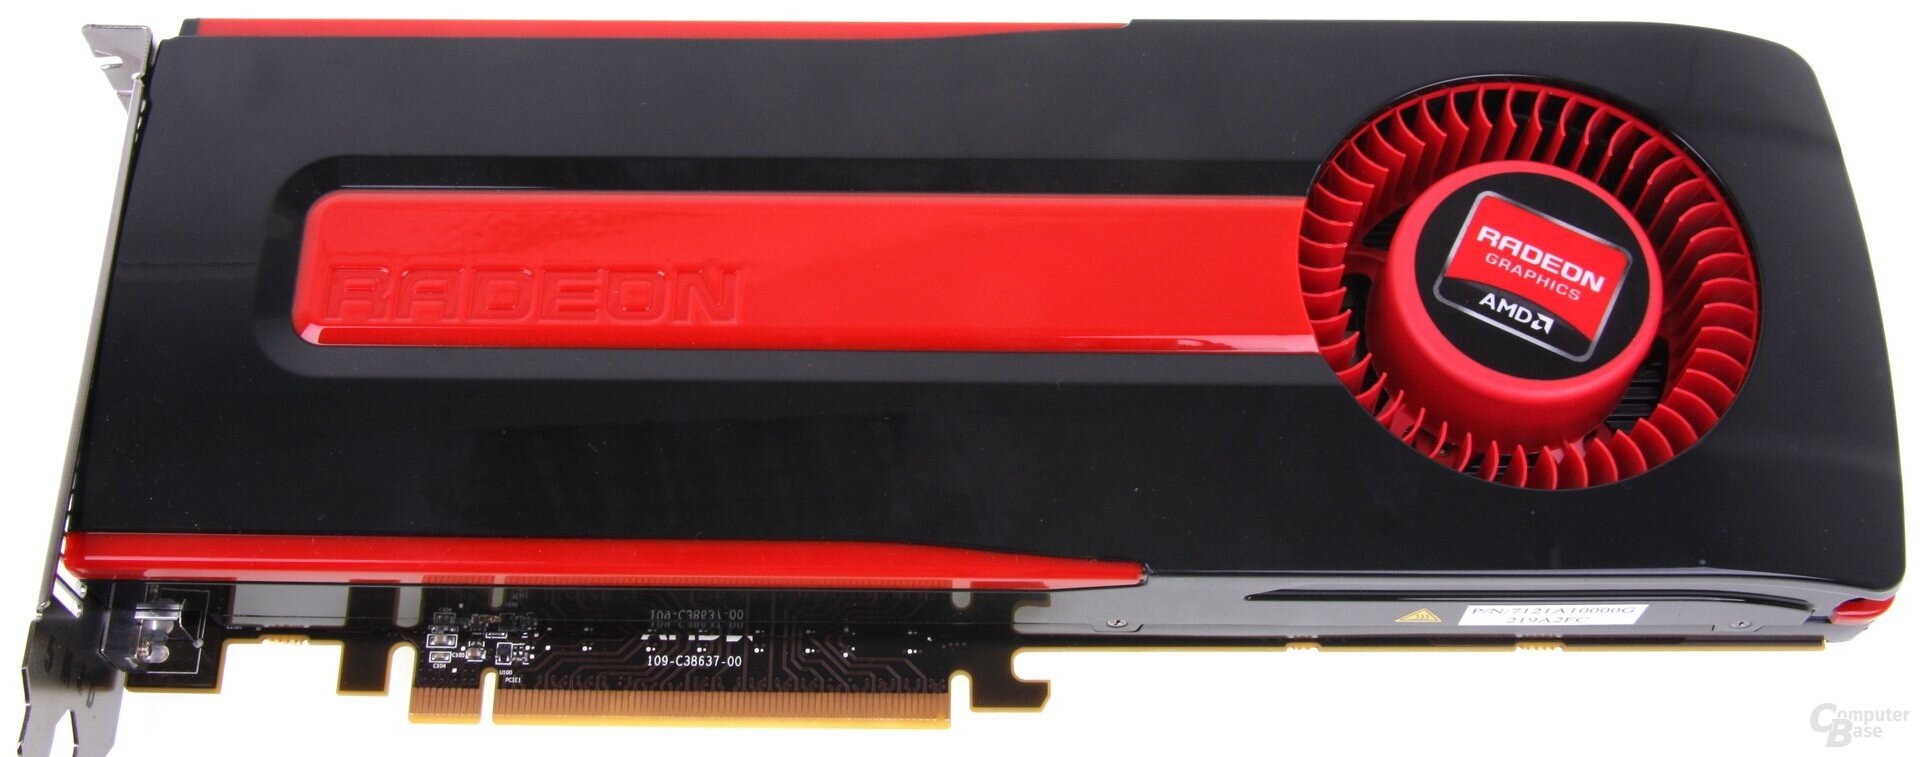 Radeon HD 7970 GHz Edition: Enorme Leistung, Kopf an Kopf mit der GeForce GTX 680